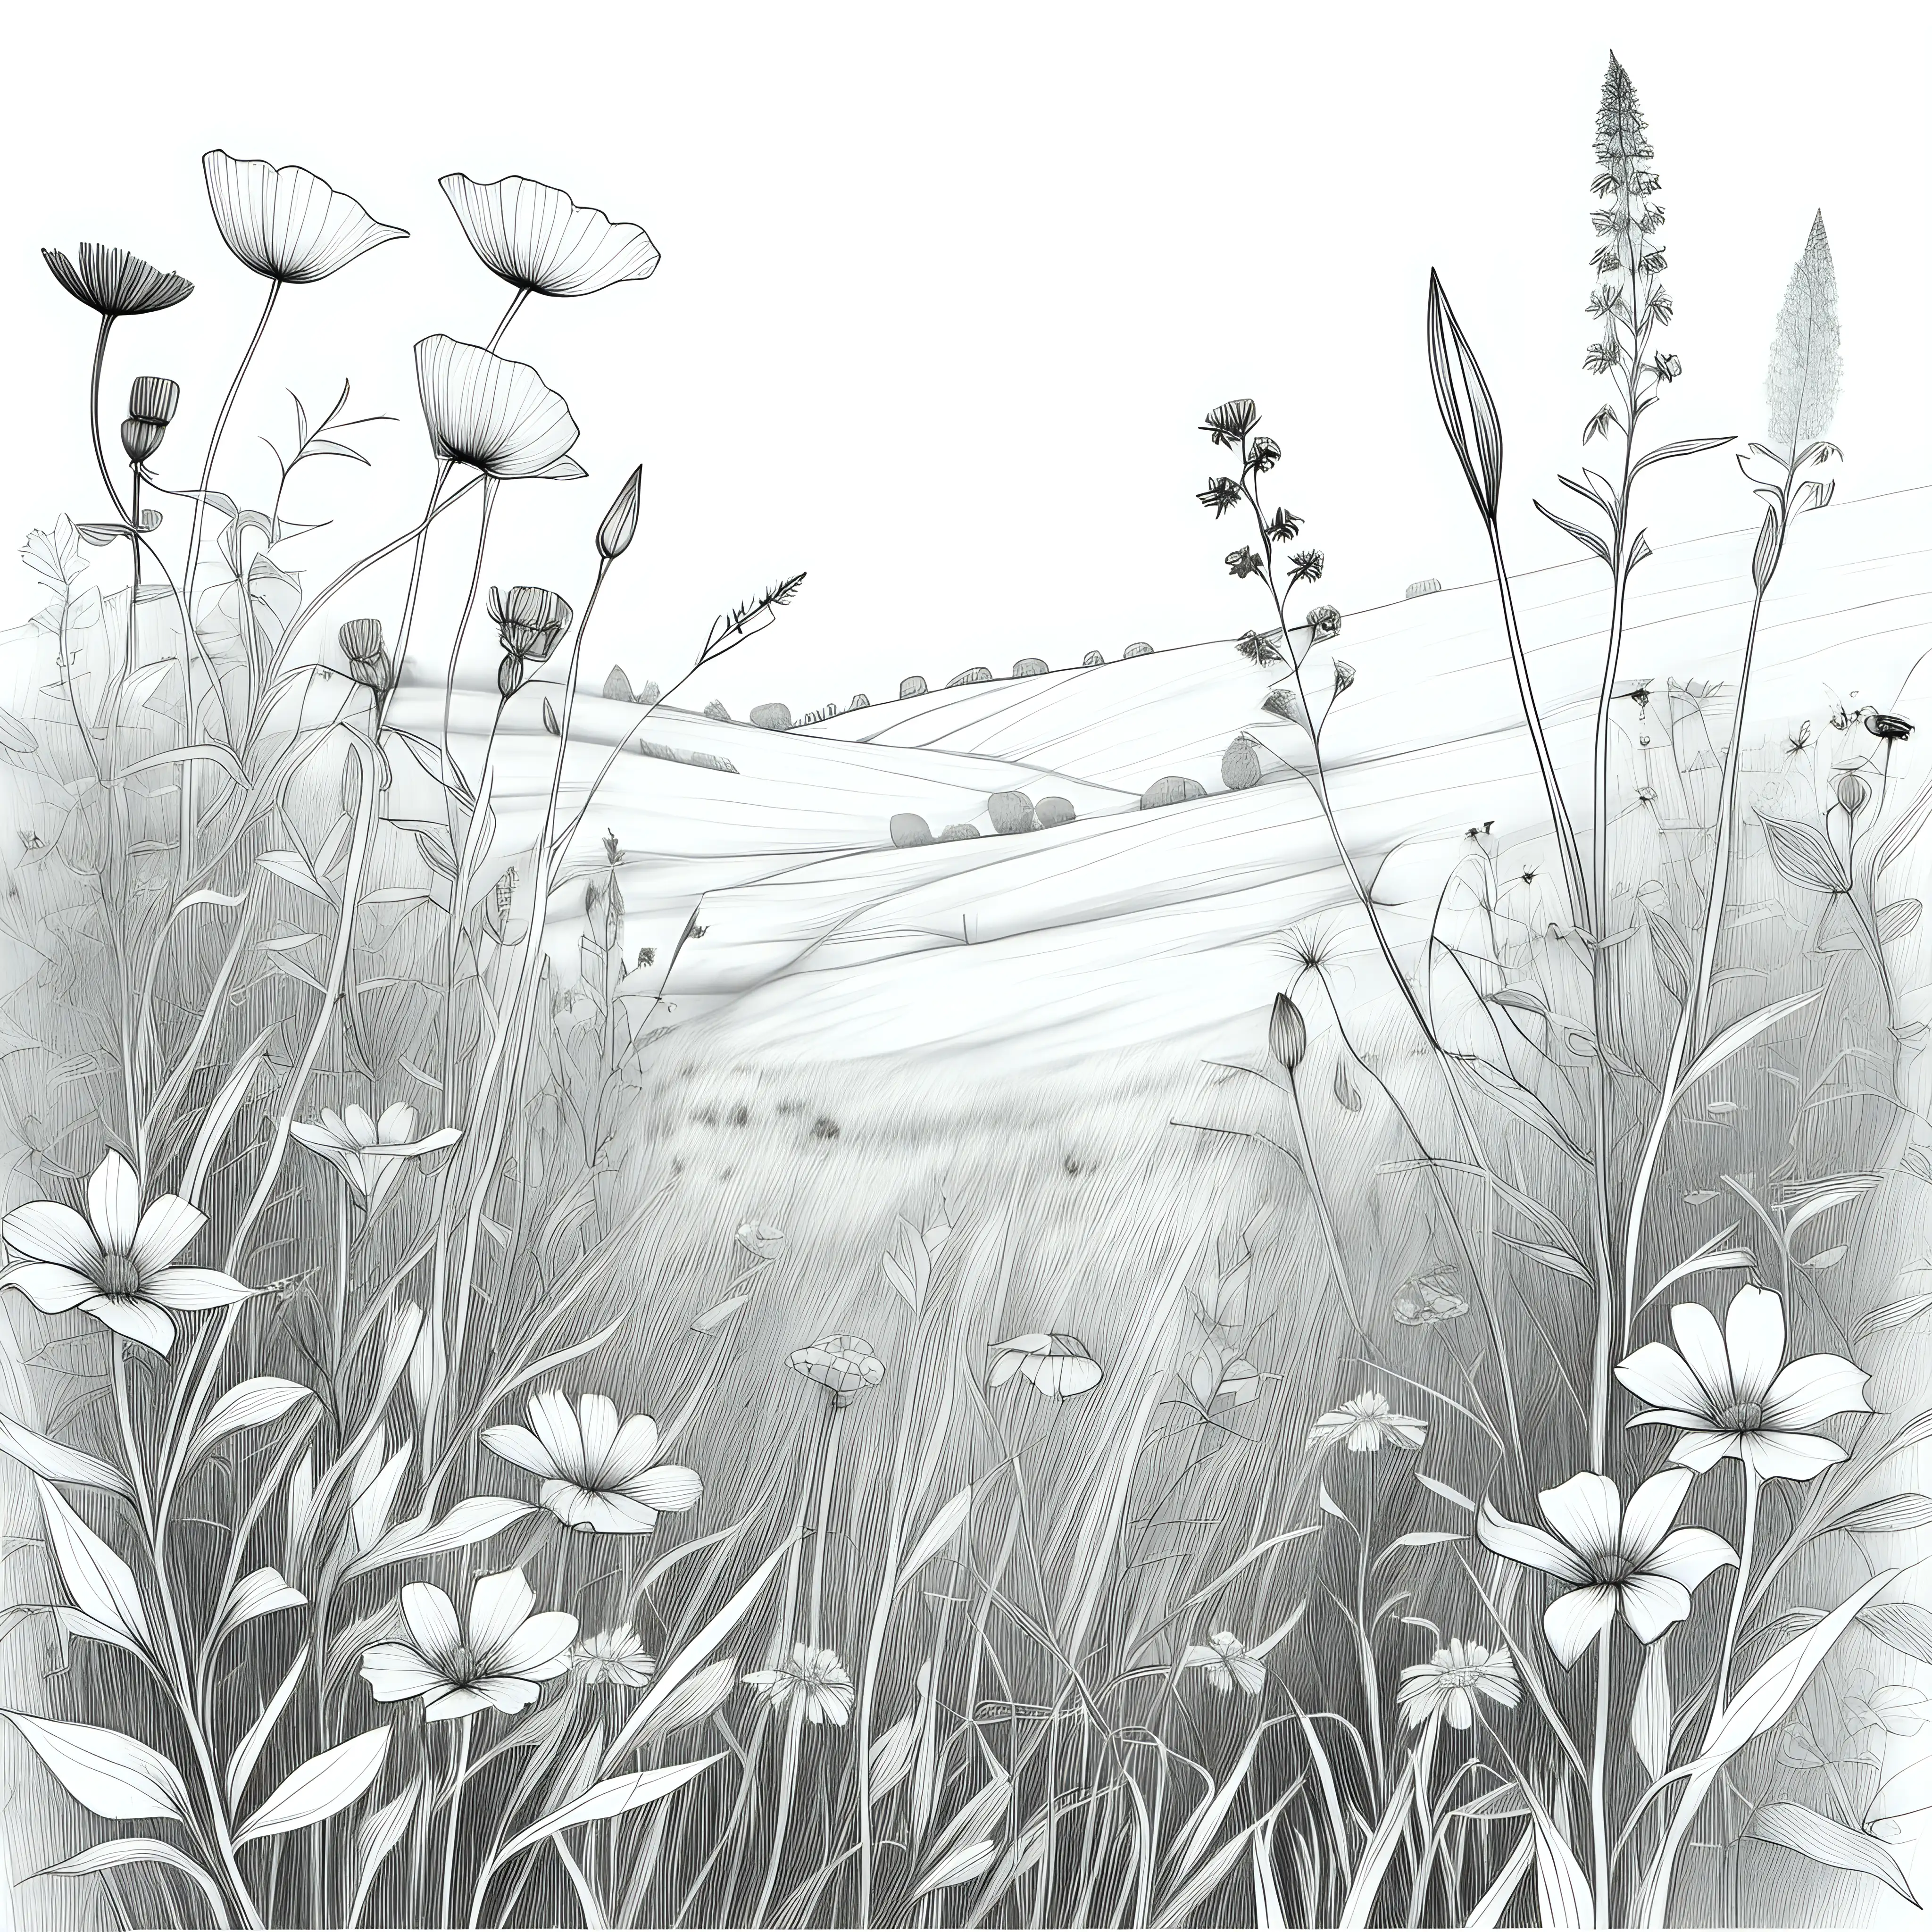 Wildblumenwiese, Bleistiftzeichnung, schwarze linien, ohne Hintergrund